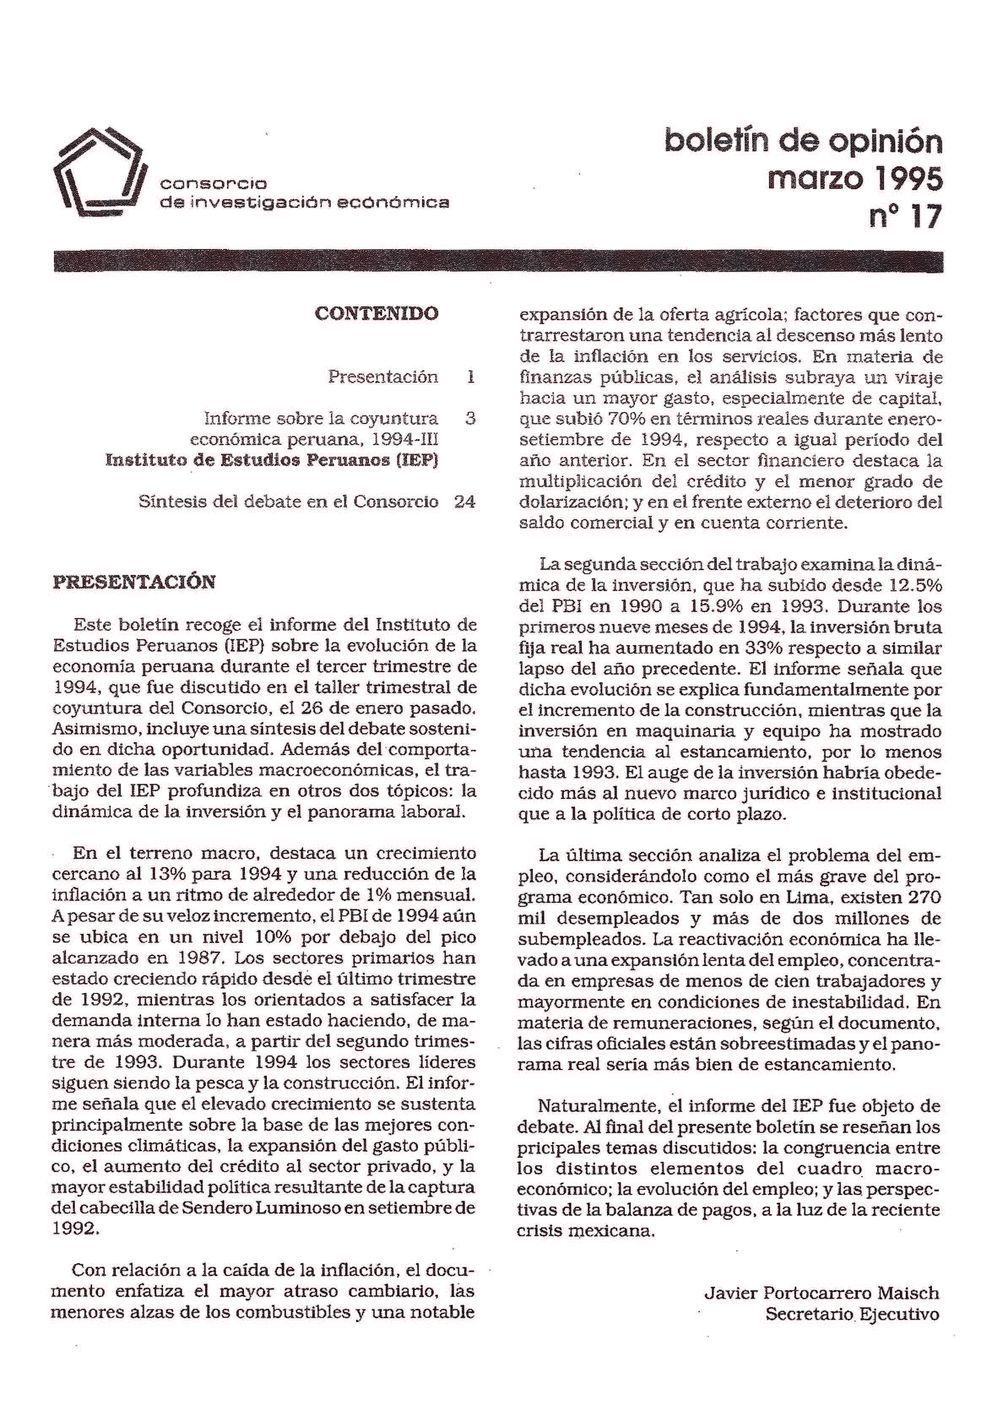 Boletín de opinión: Análisis de la economía peruana, 1994-III